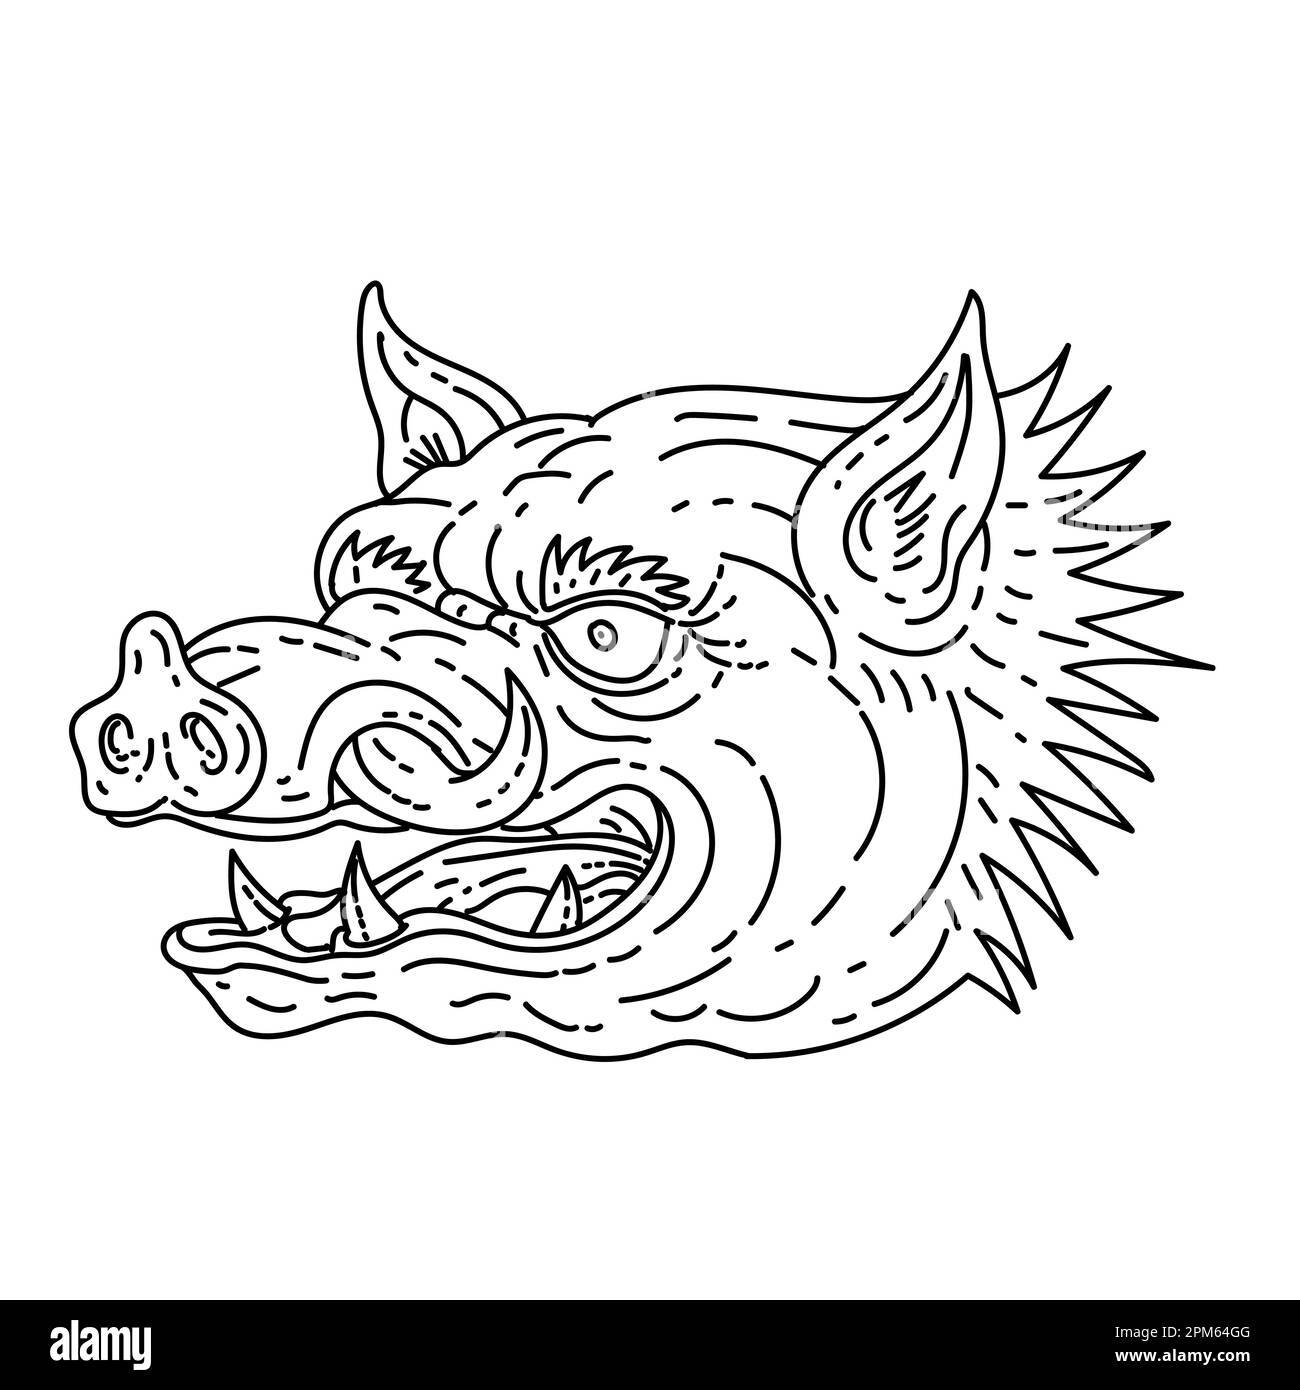 Illustrazione in linea singola della testa di un razorback arrabbiato, maiale selvatico o maiale ferale fatto in stile di disegno in linea monolina. Foto Stock